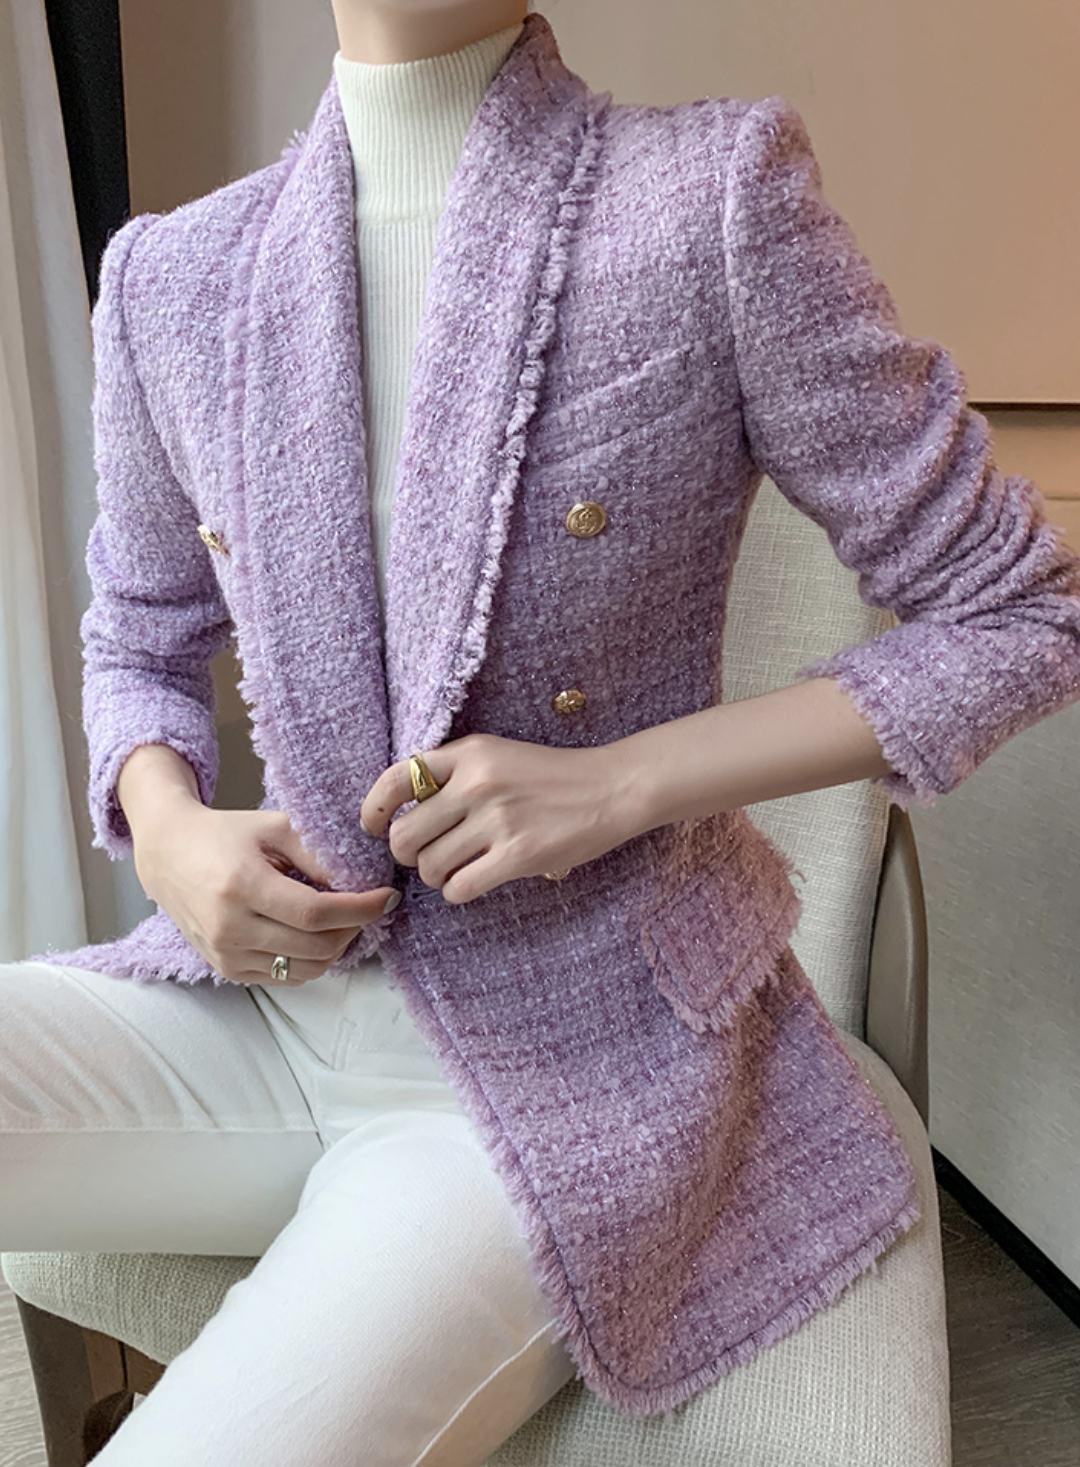 Doxen Italian Tweed Jacket